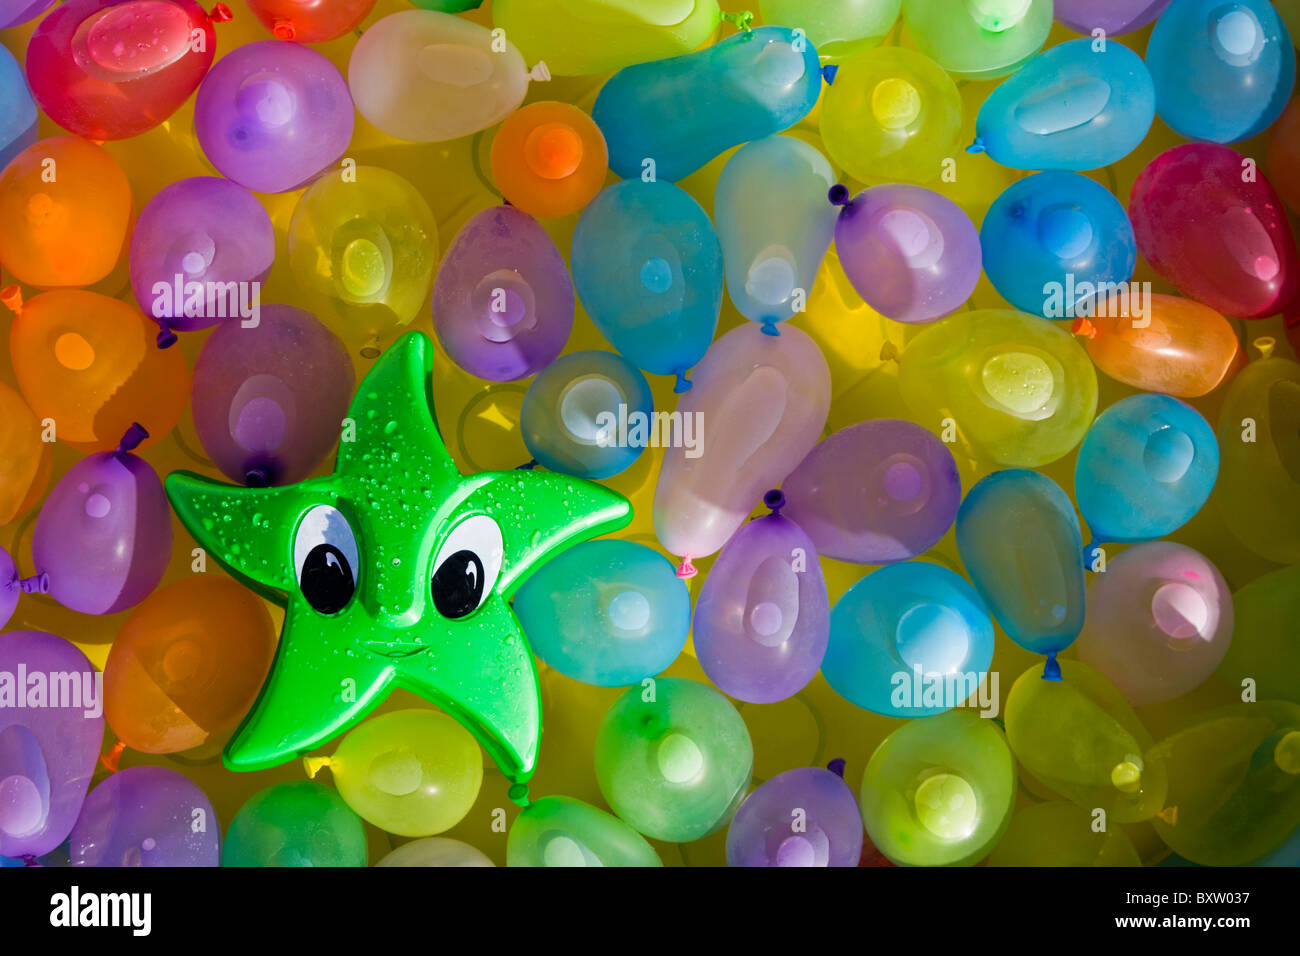 Grüne Spielzeug Stern mit Augen zwischen gefärbtem Wasser gefüllten Ballons schweben Stockfoto